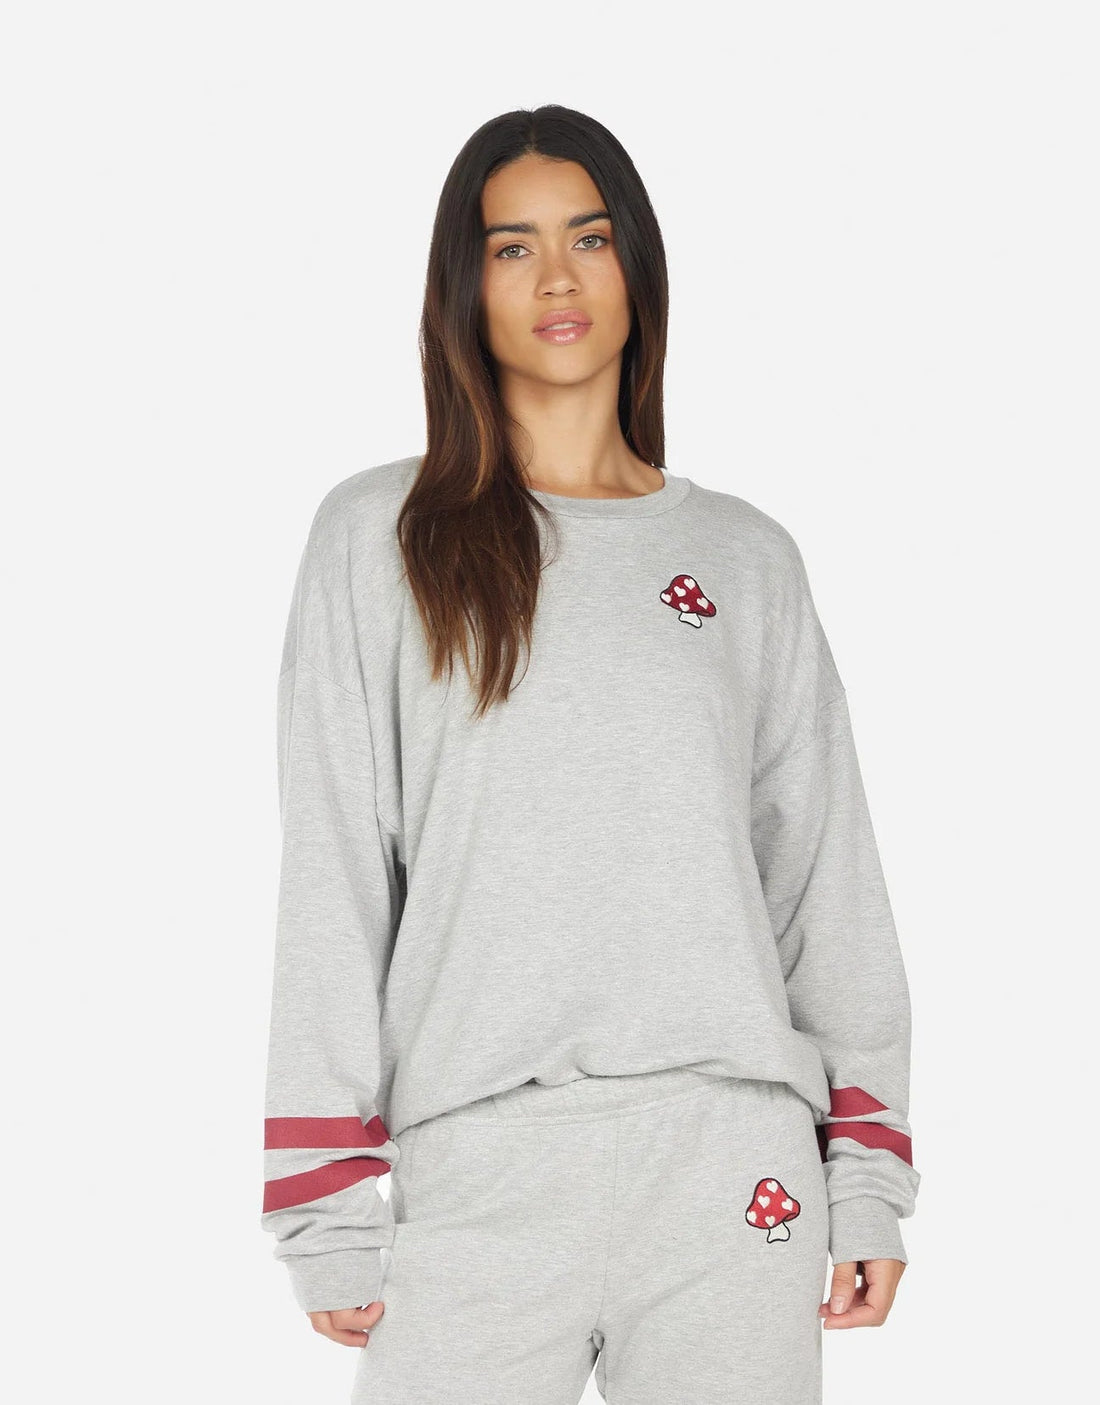 Shop Lauren Moshi Babbs Mushroom Happyface Sweater - Premium Sweatshirt from Lauren Moshi Online now at Spoiled Brat 